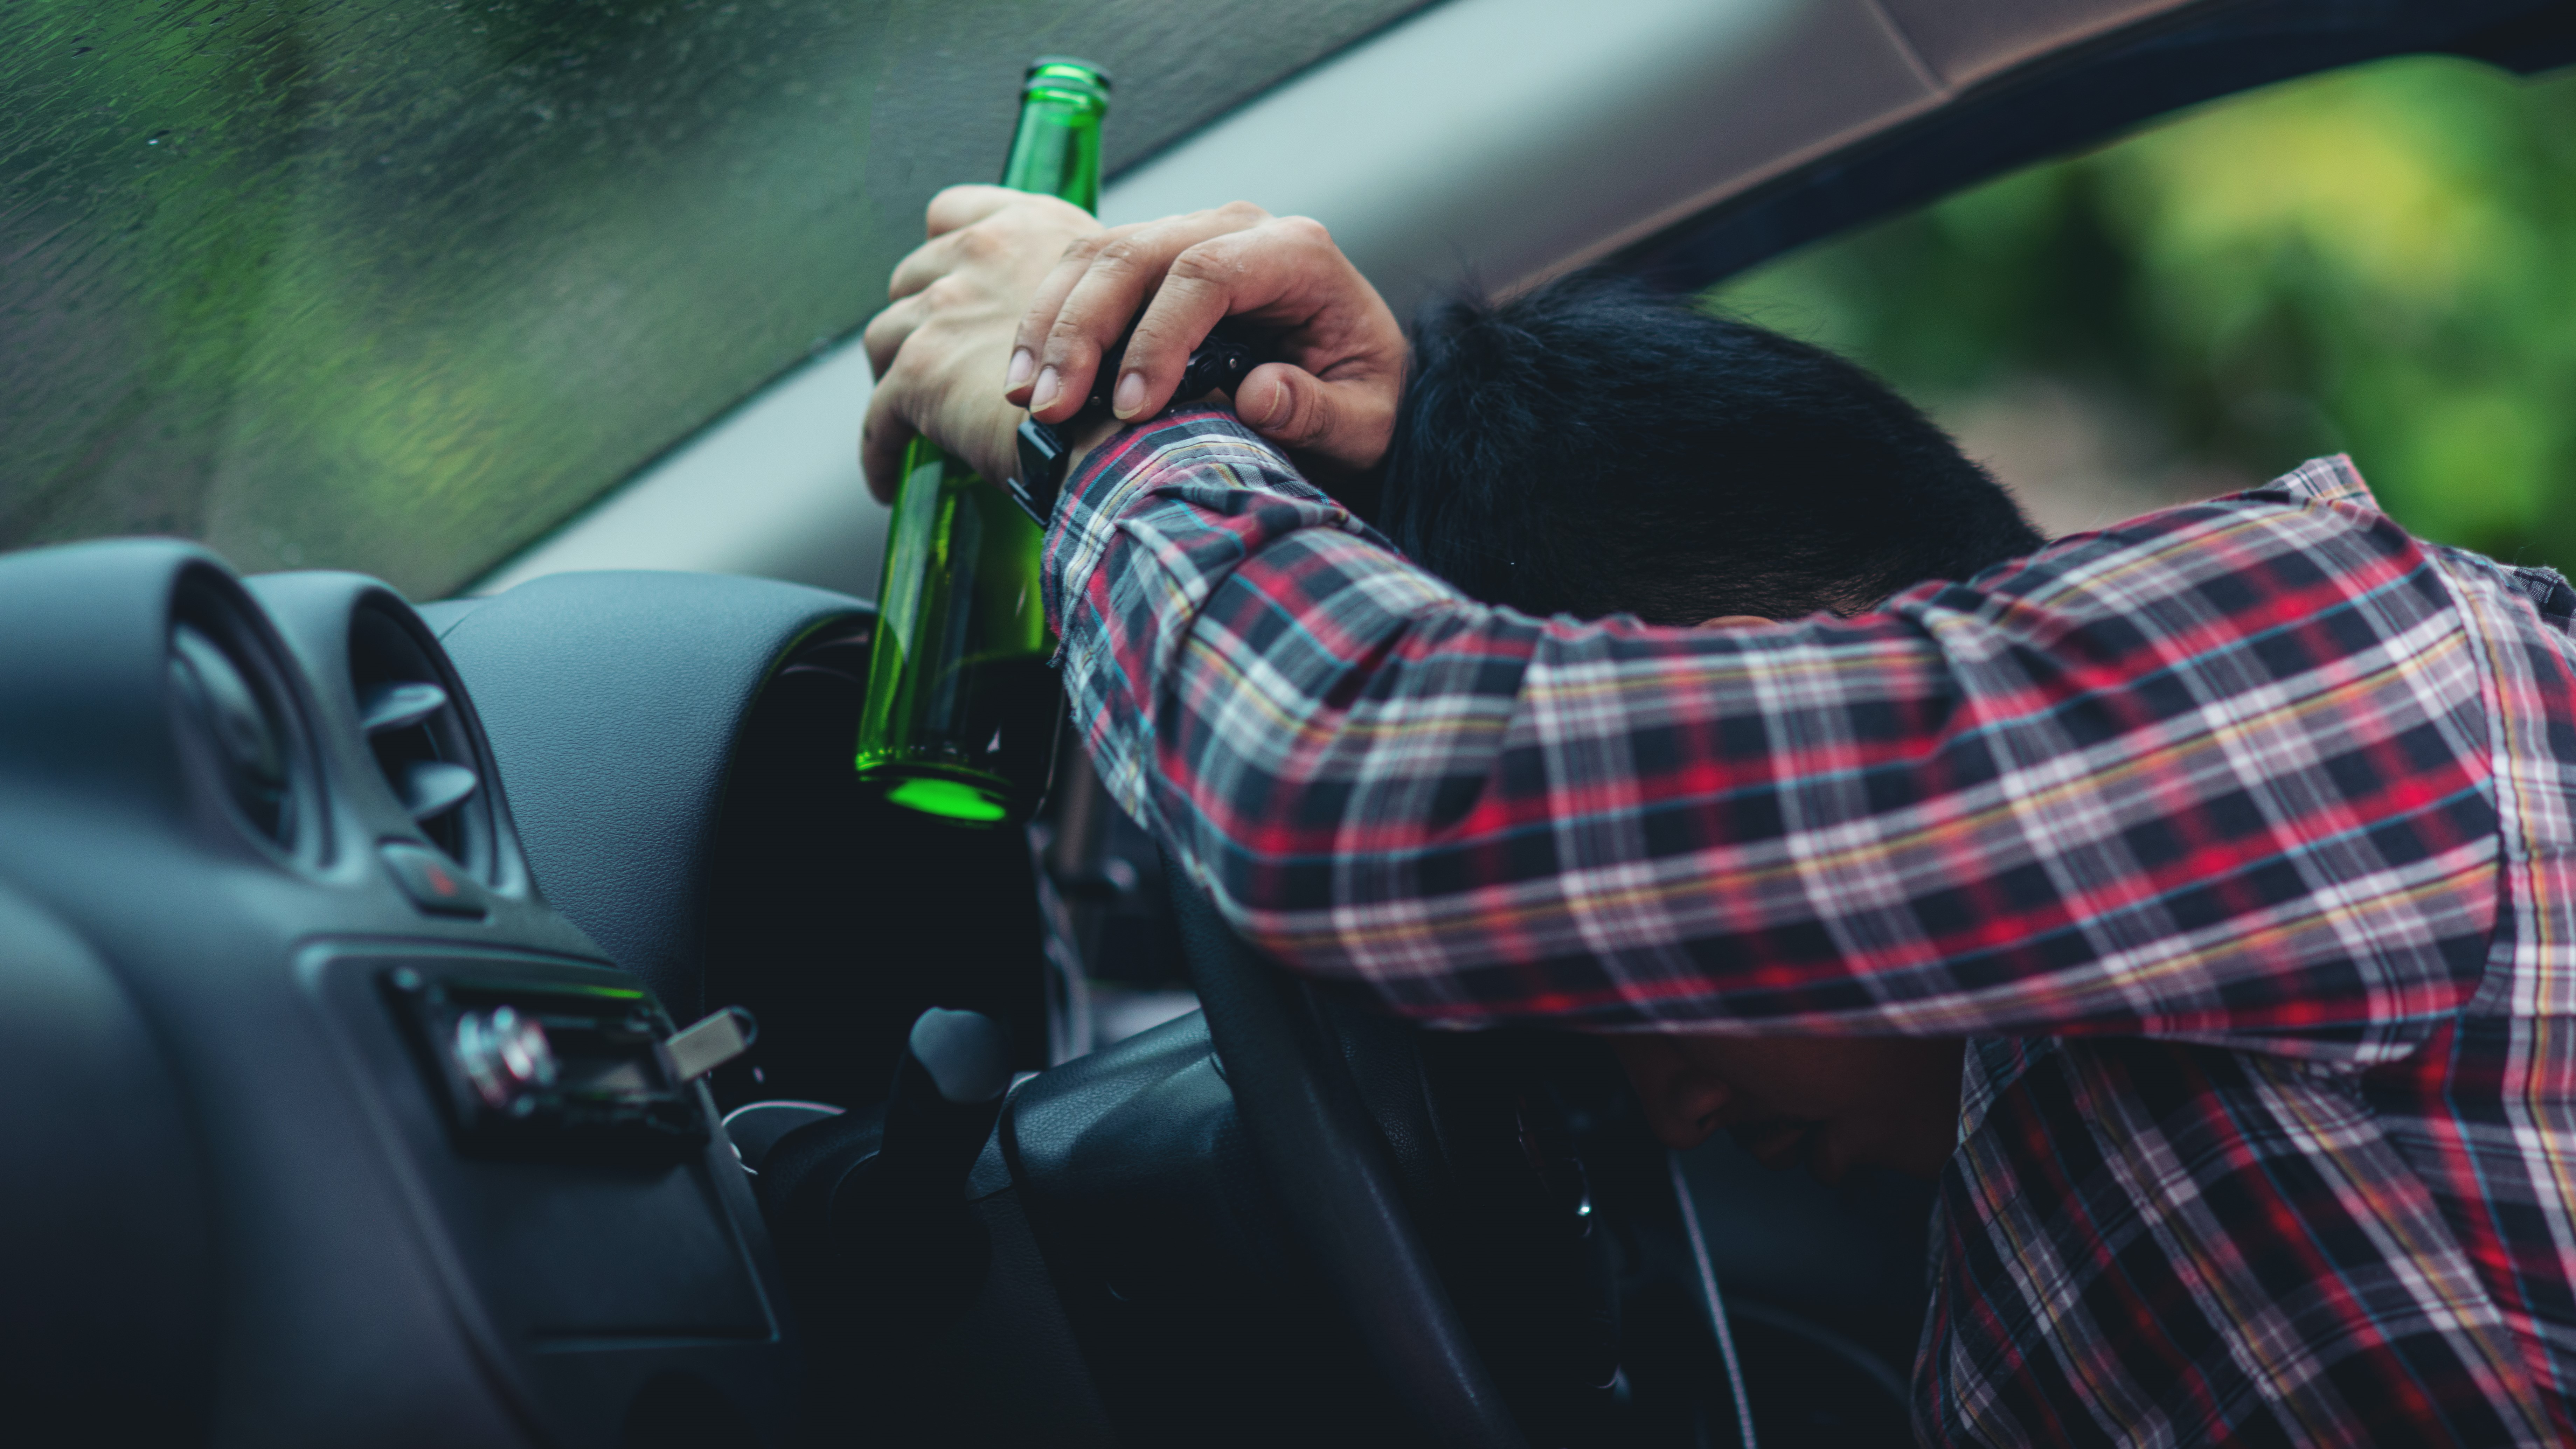 Повторное управление автомобилем в состоянии опьянения